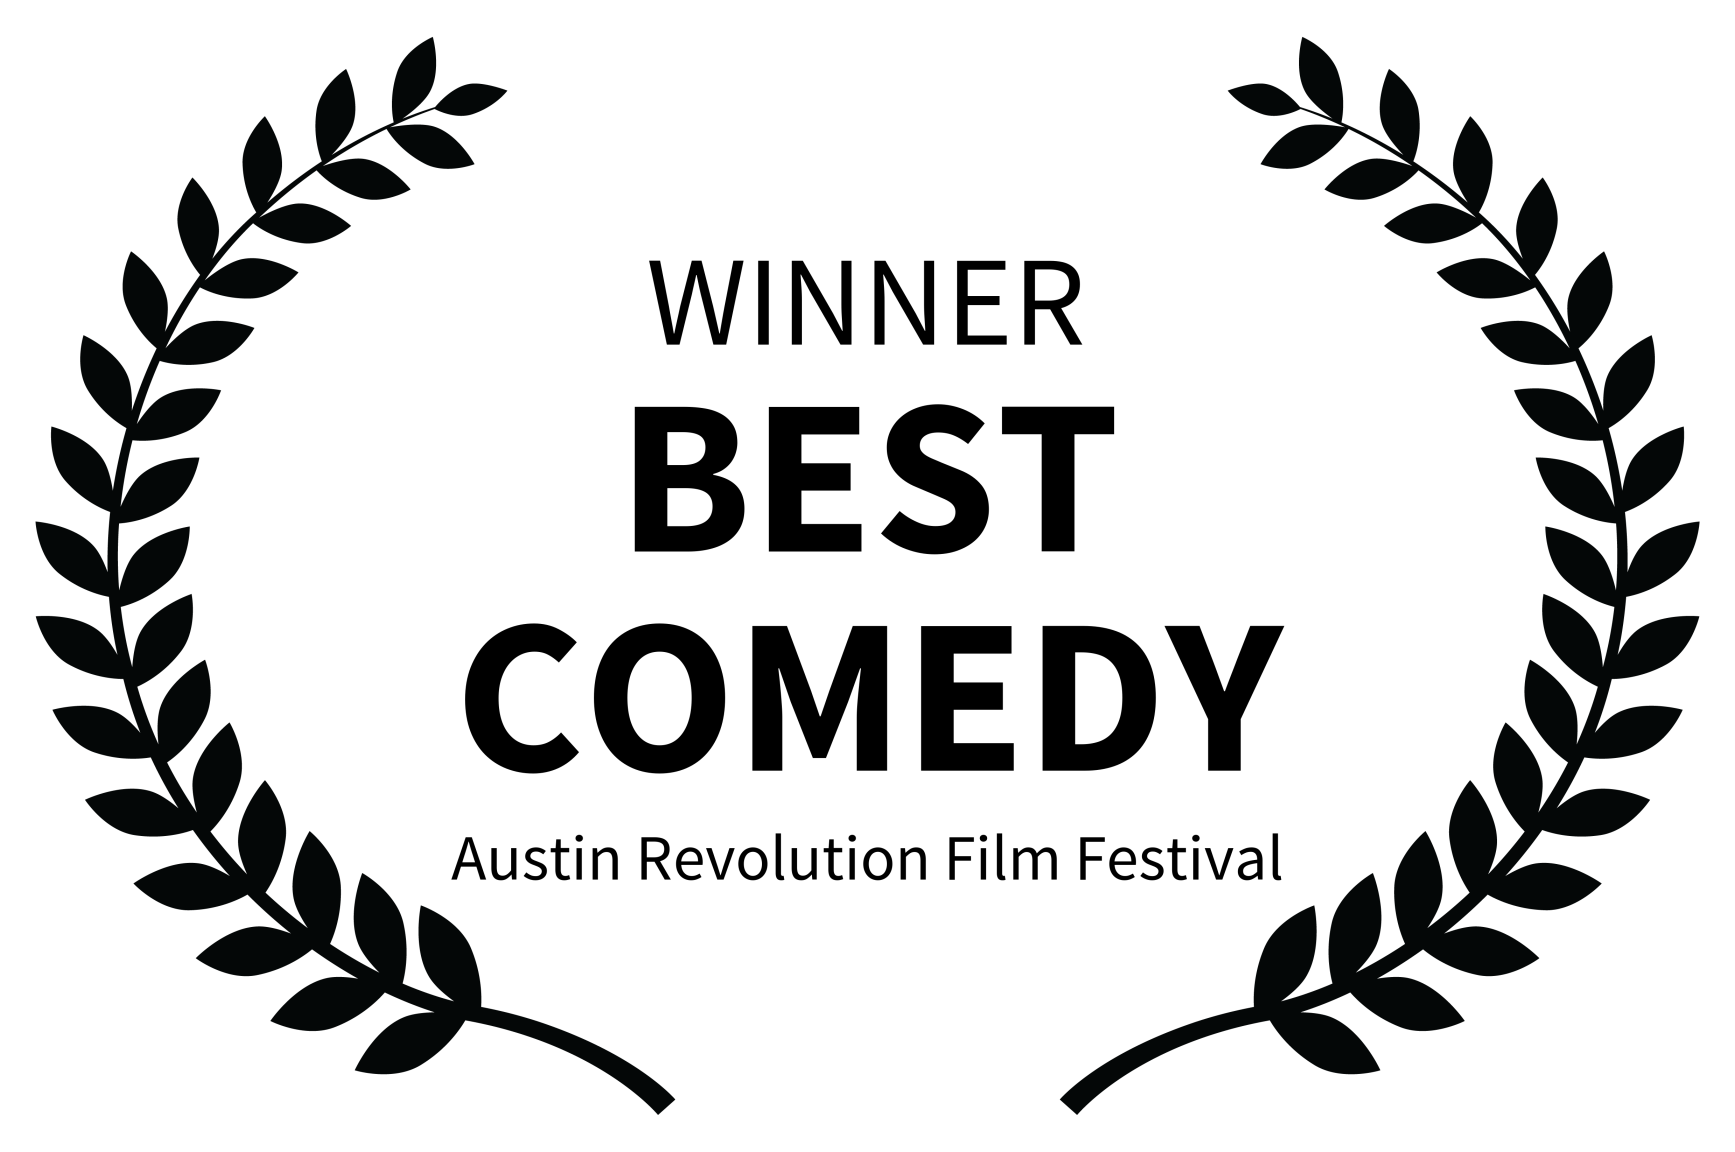 WINNER - BEST COMEDY - Austin Revolution Film Festival (2).png